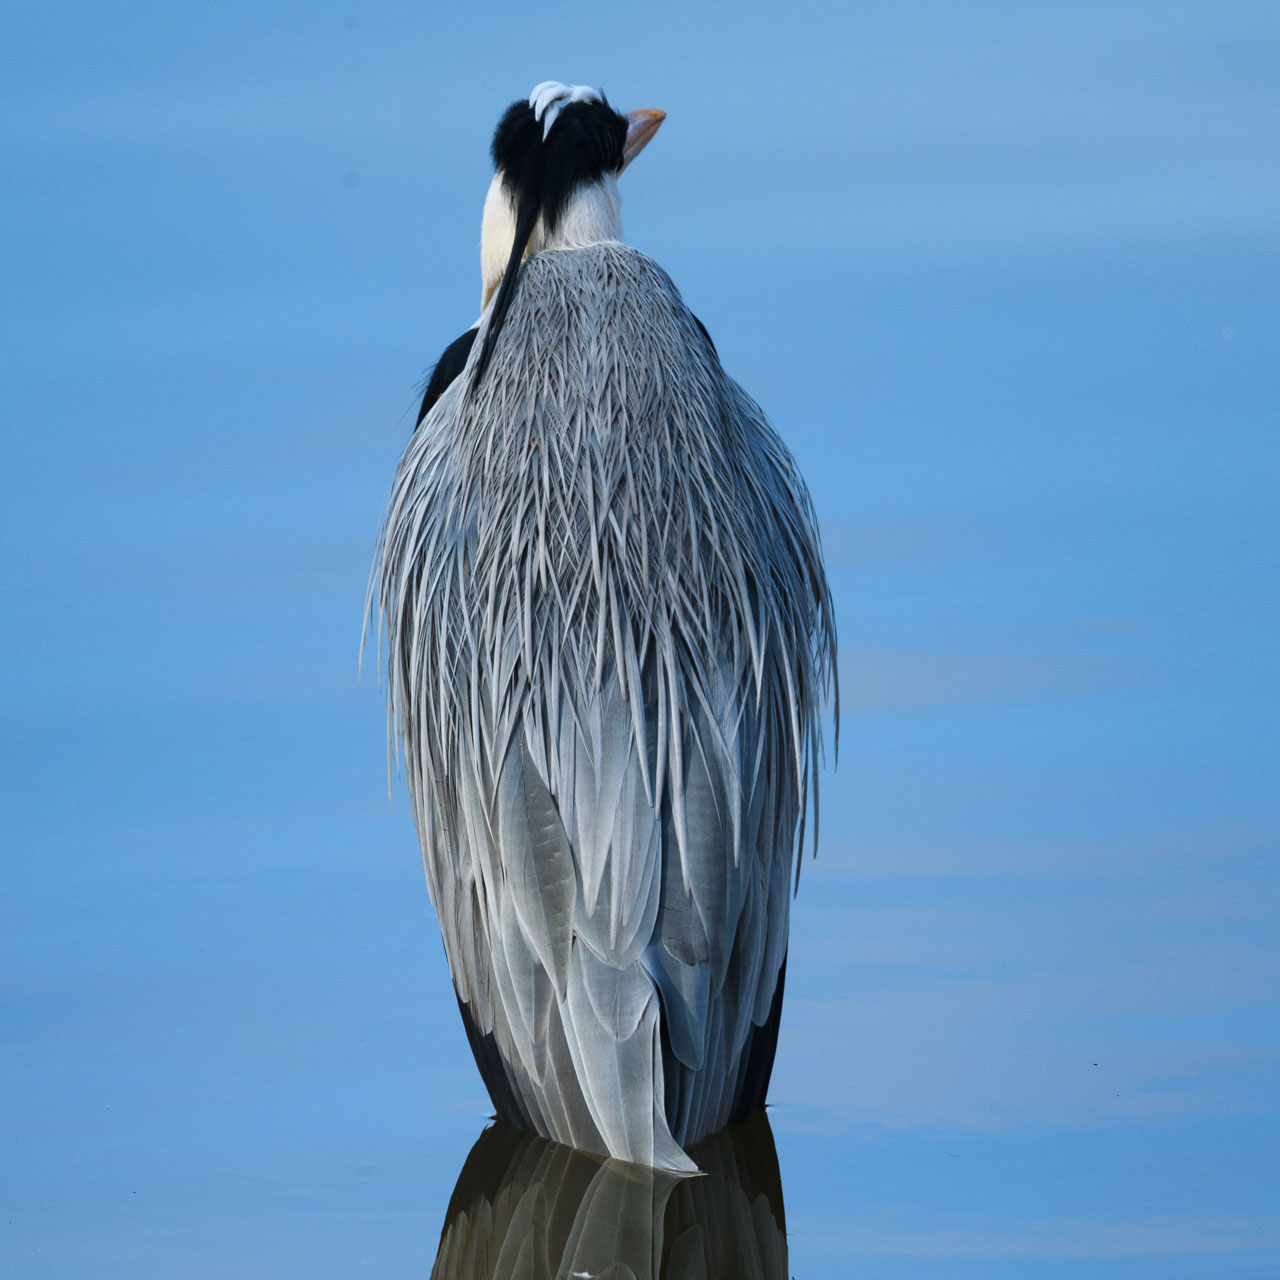 青空を反射する池に立つアオサギの後ろ姿。The back view of a Grey Heron standing in a pond reflecting the blue sky.